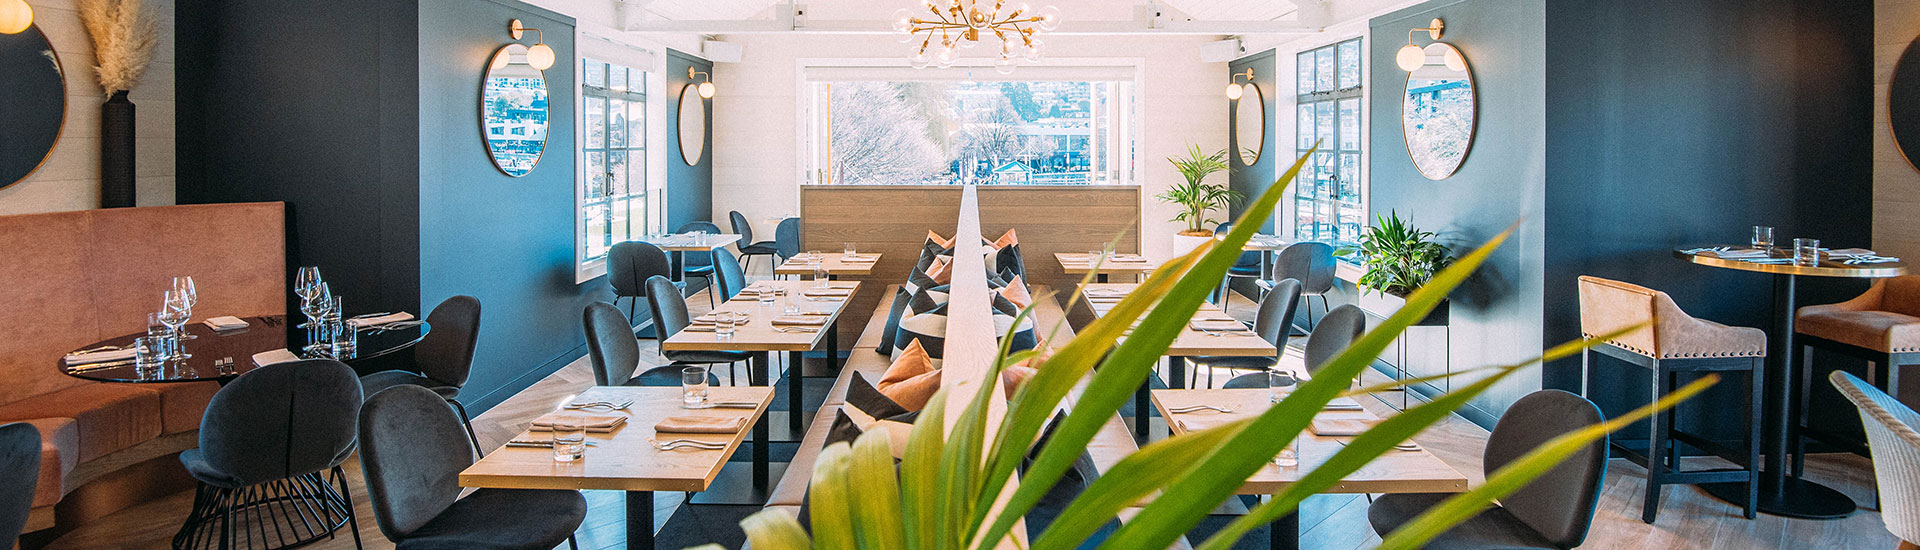 Boardwalk restaurant in Queenstown interior